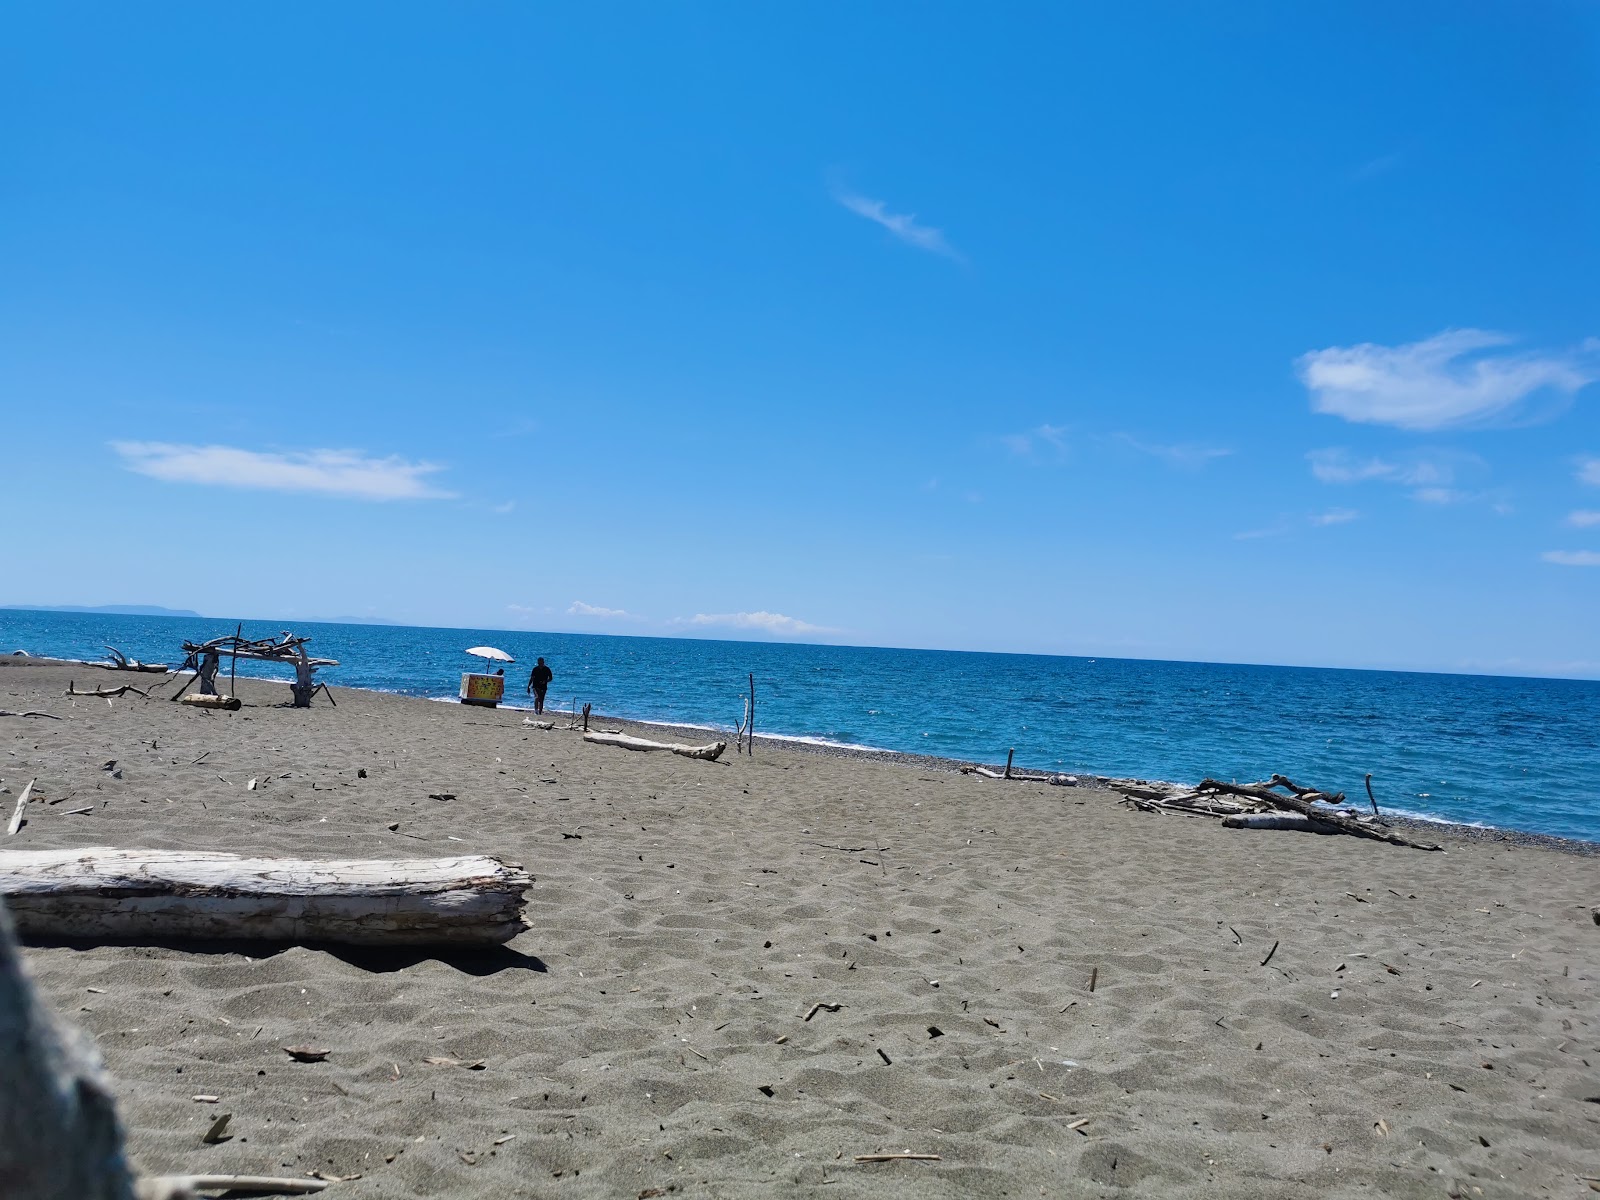 Bau Beach Le Gorette'in fotoğrafı - rahatlamayı sevenler arasında popüler bir yer